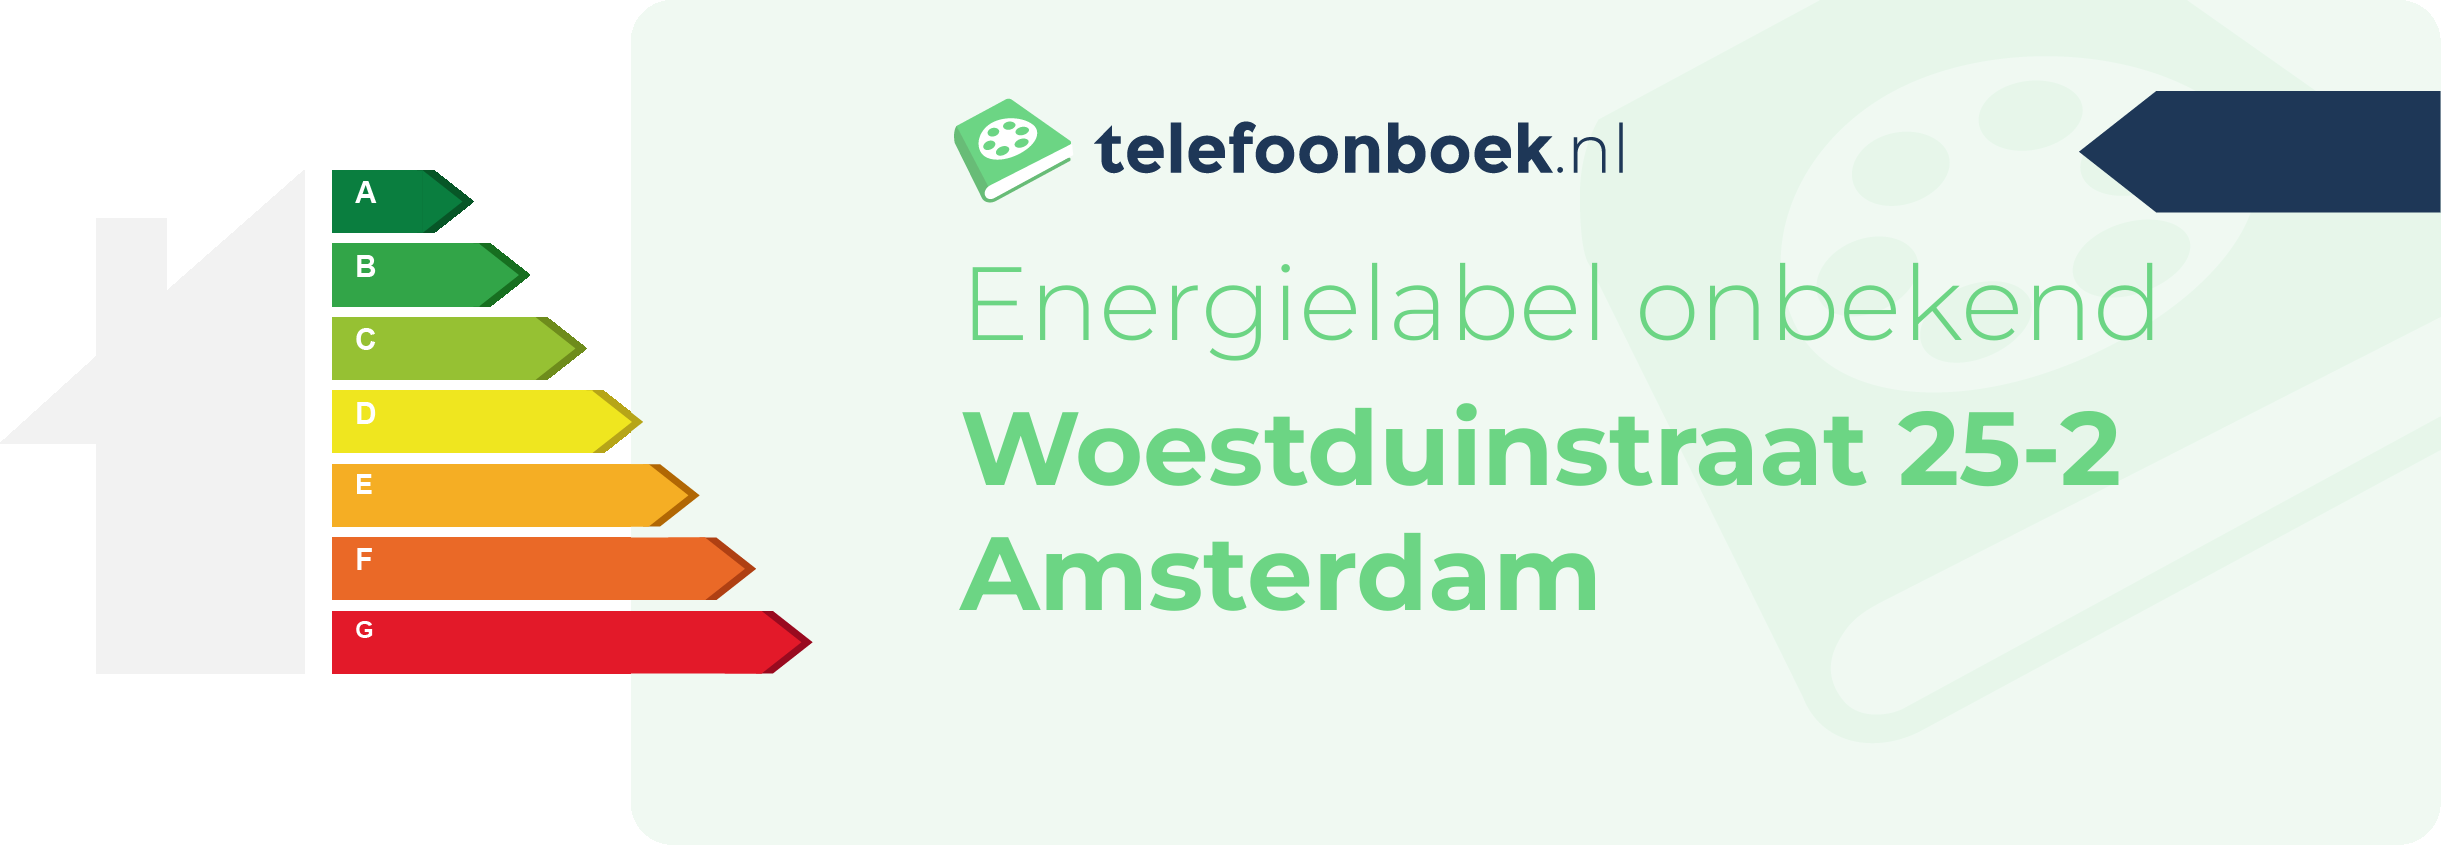 Energielabel Woestduinstraat 25-2 Amsterdam